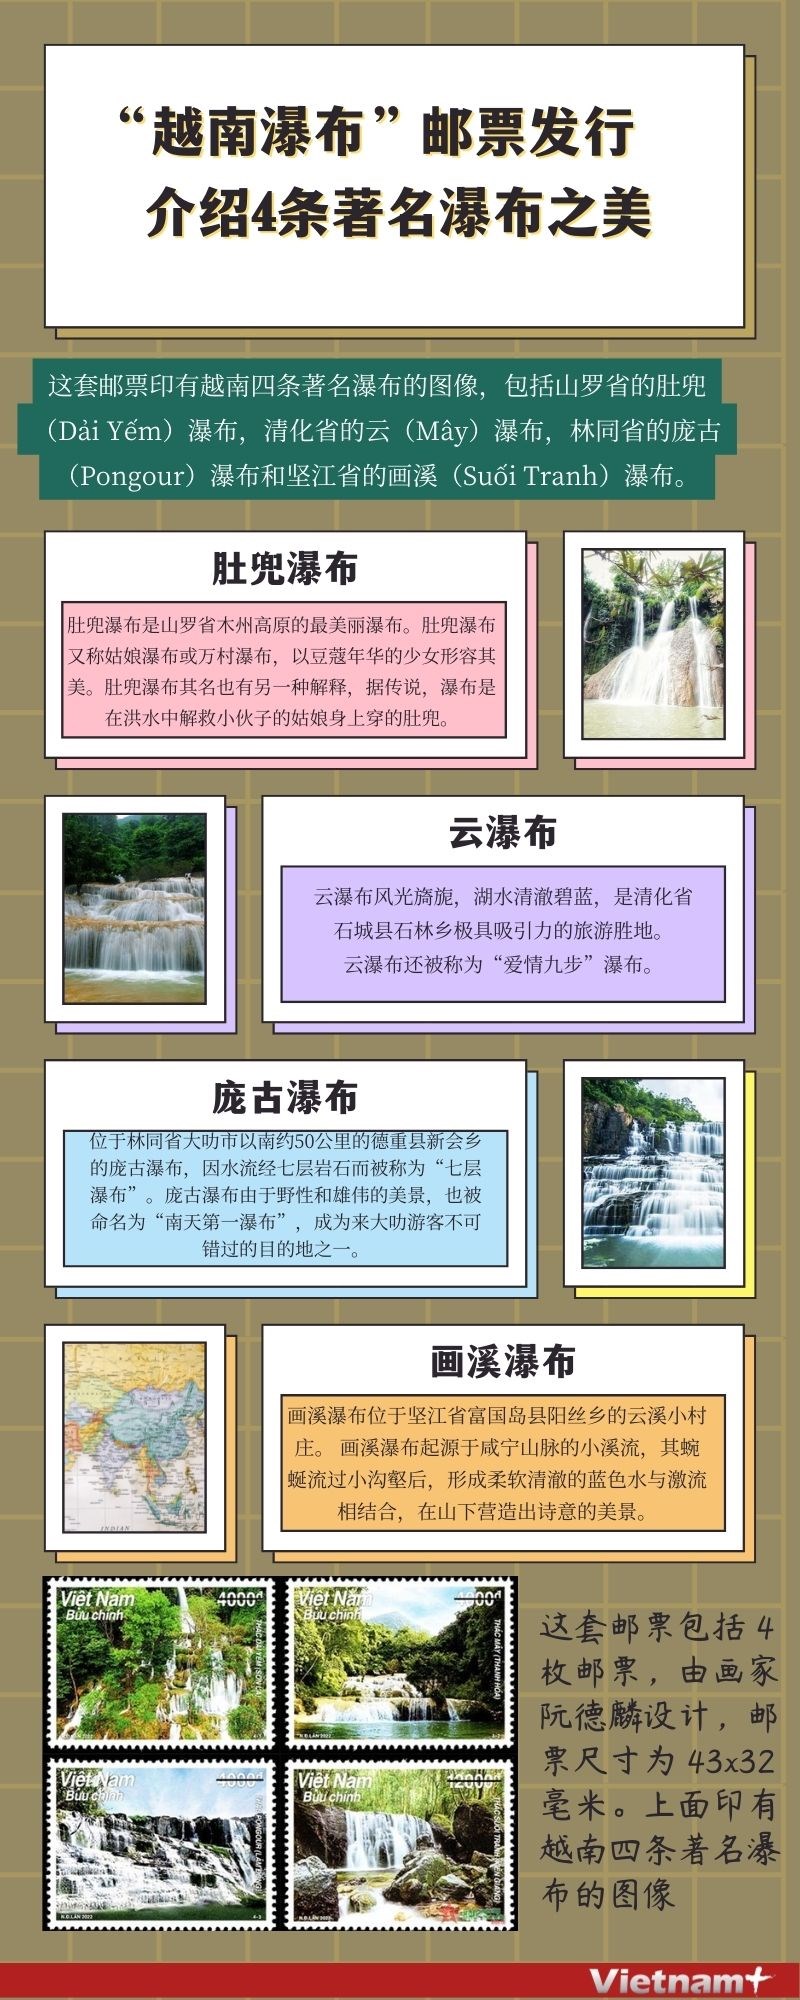 图表新闻：“越南瀑布”邮票发行 介绍4条著名瀑布之美 hinh anh 1